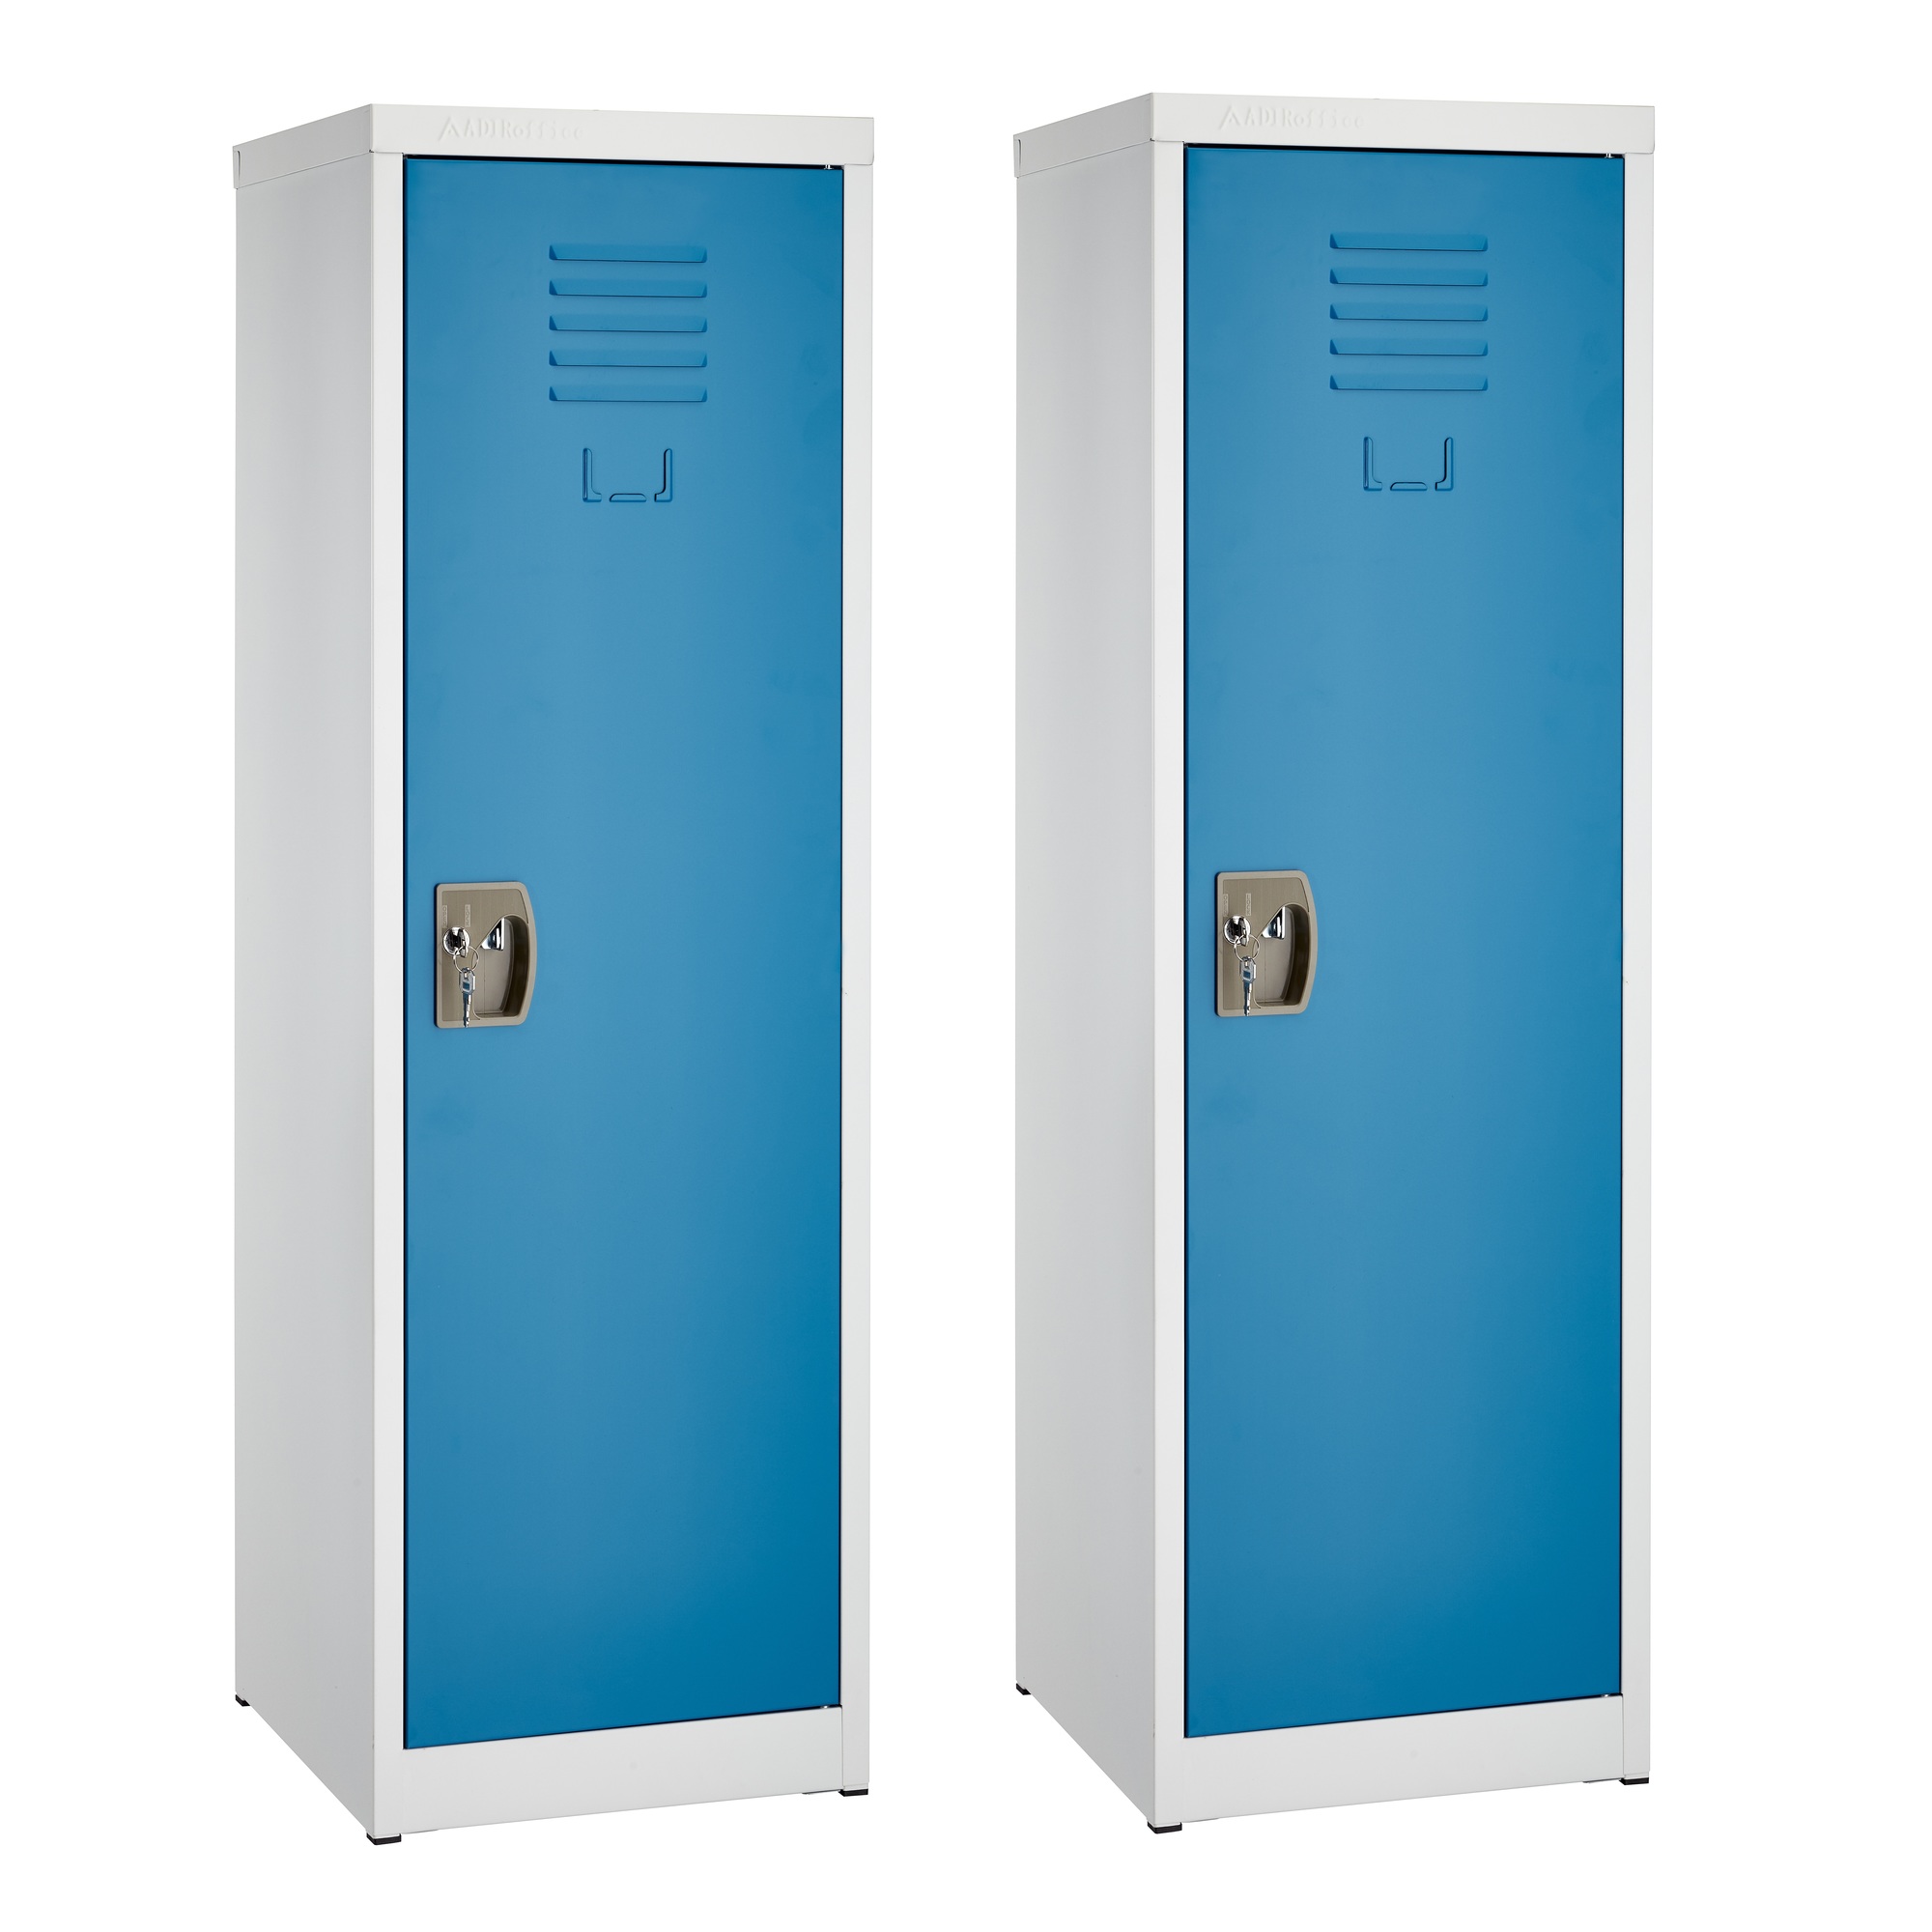 Alpine, 48ft.' Single Tier Locker for Kids, Blue, 2-Pack, Height 48 in, Width 15 in, Color Blue, Model ADI629-01-BLU-2PK